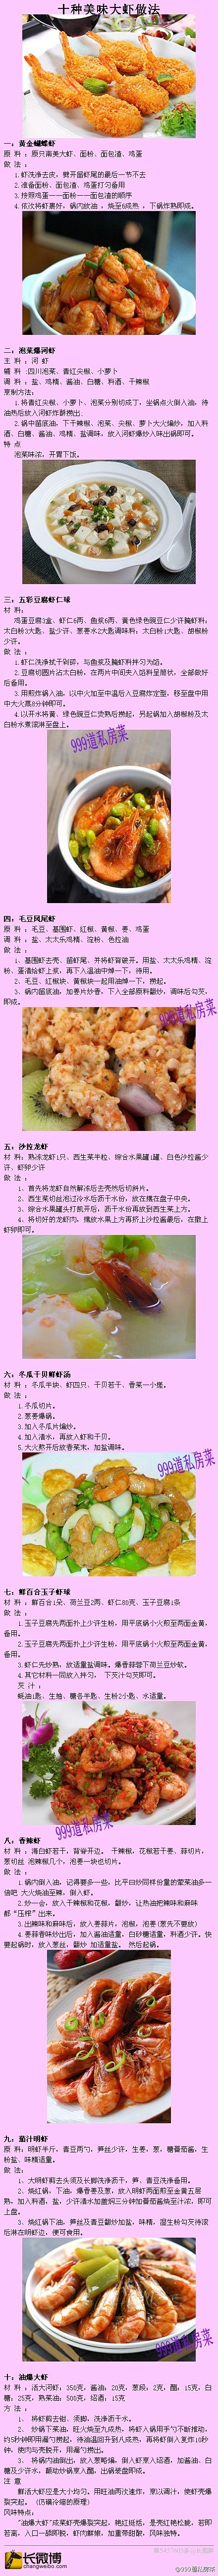 虾的10种做法 #食谱#